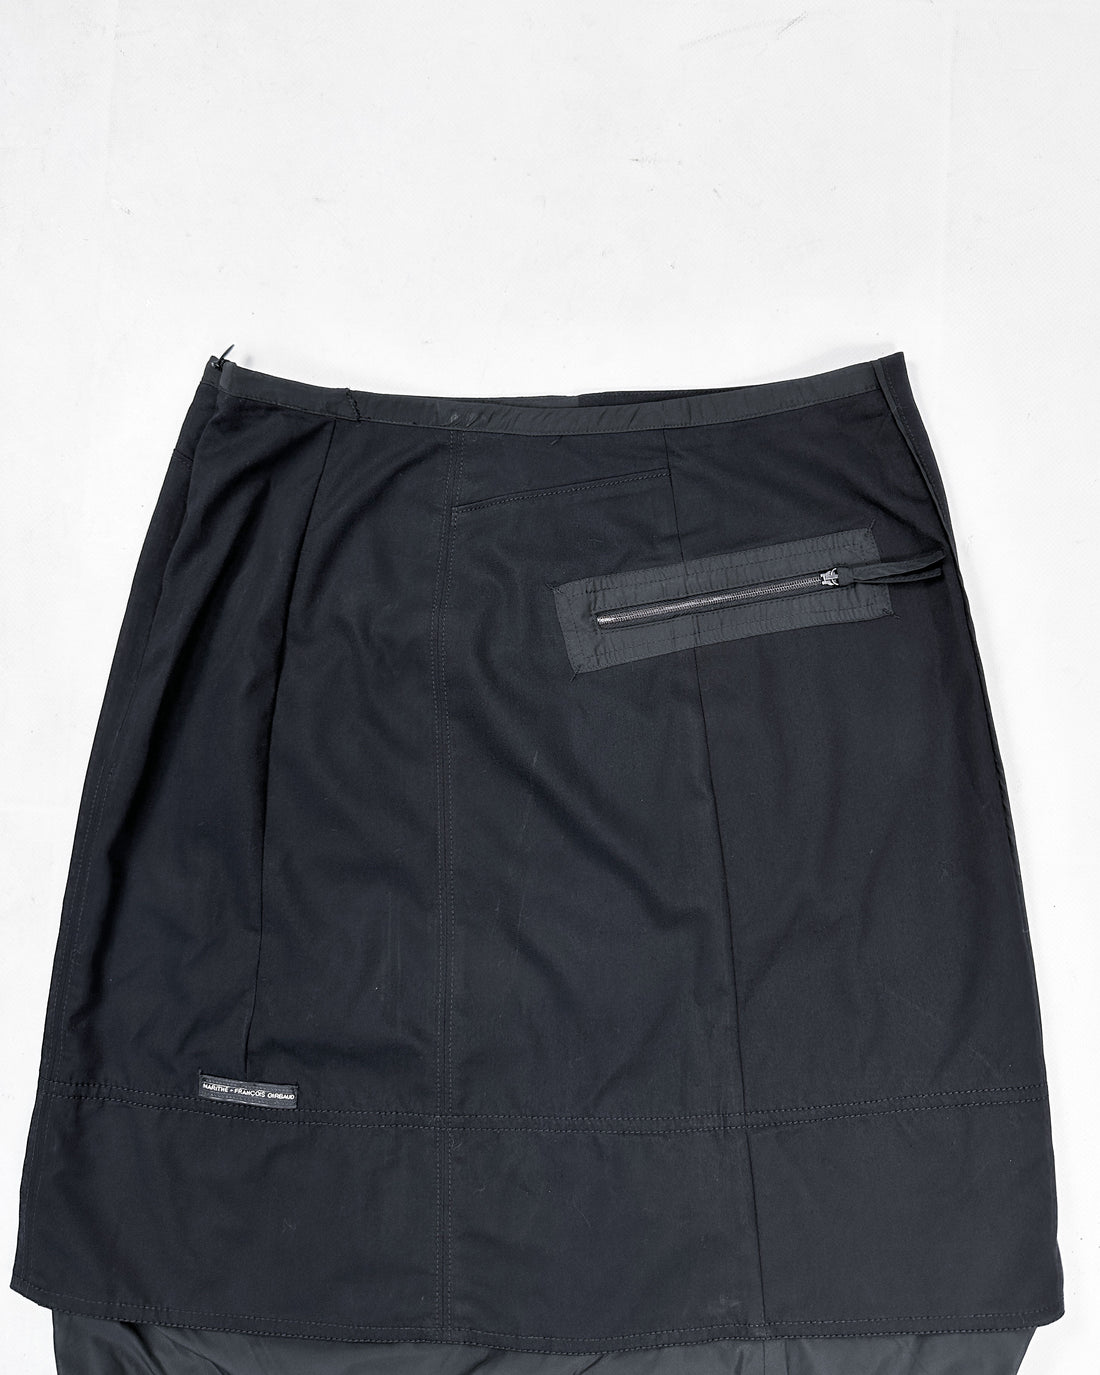 Marithé Francois Girbaud Utility Black Skirt 2000's